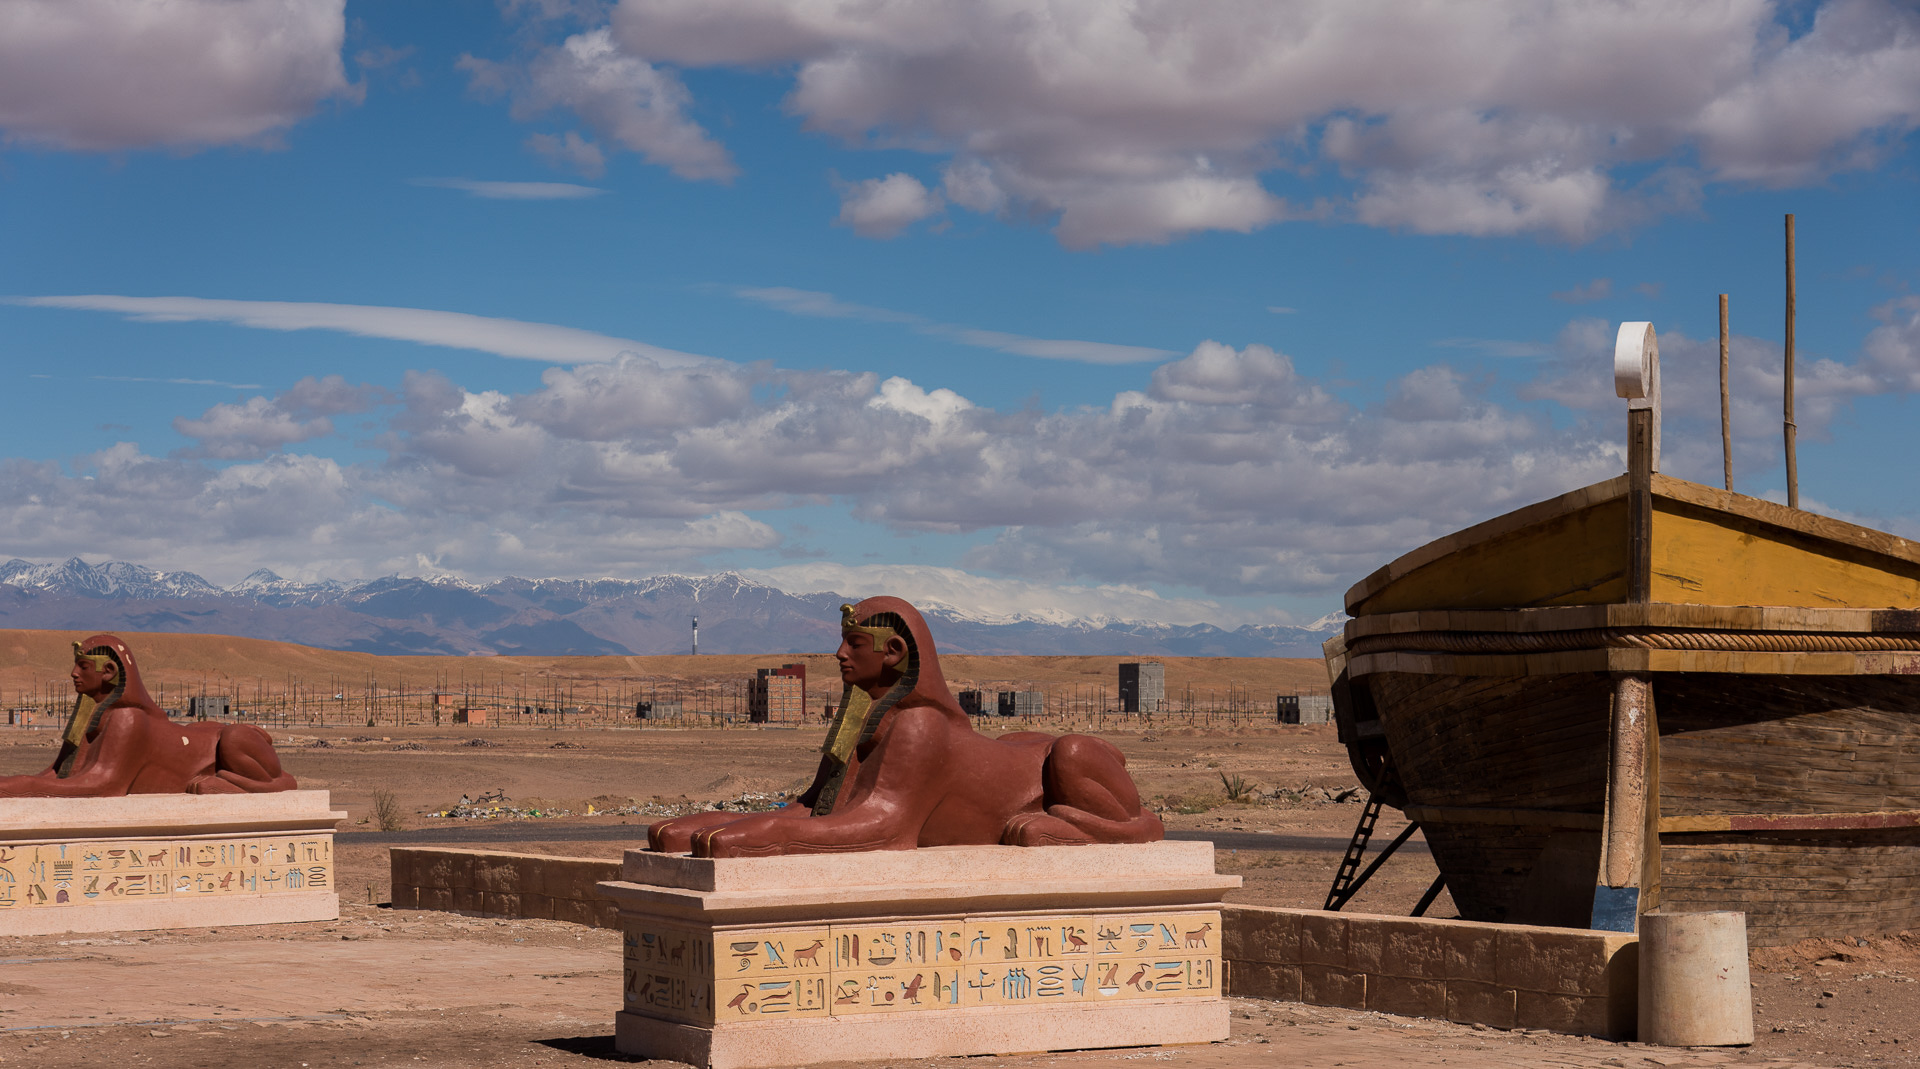 Ouarzazate. Studios de cinéma à la périphérie de la ville. Ici ont été tournés plusieurs films connus, dont Astérix et Cléopatre.